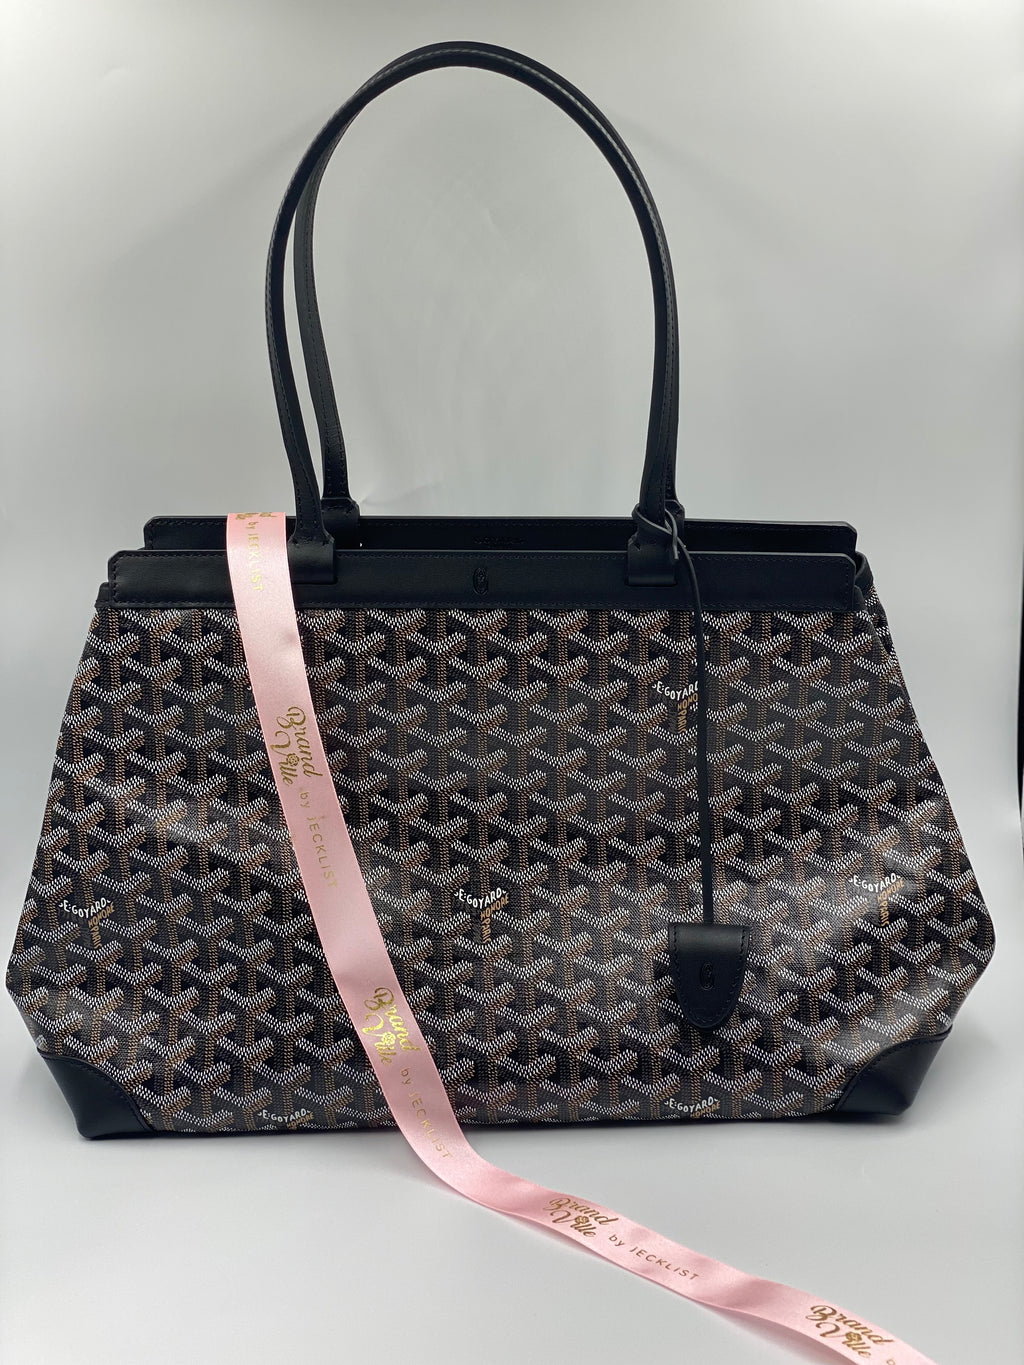 Goyard, Bags, Brand New Goyard Bellechasse Biaude Pm Bag White